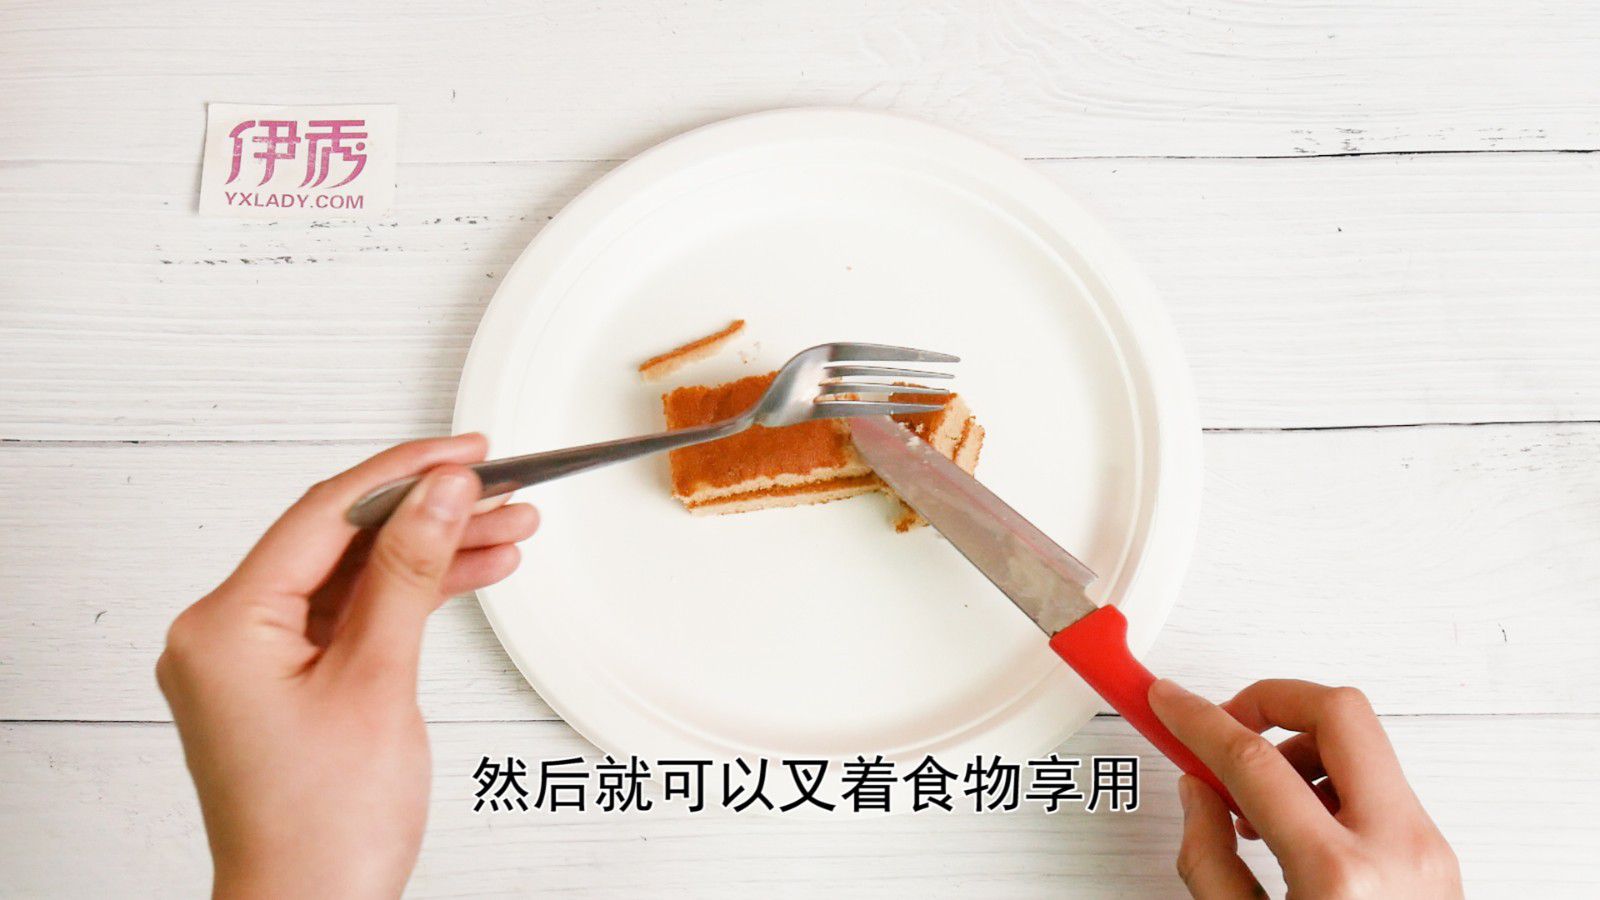 【餐具礼仪】如何摆放你的餐具? How to rest your fork and knife? - 知乎